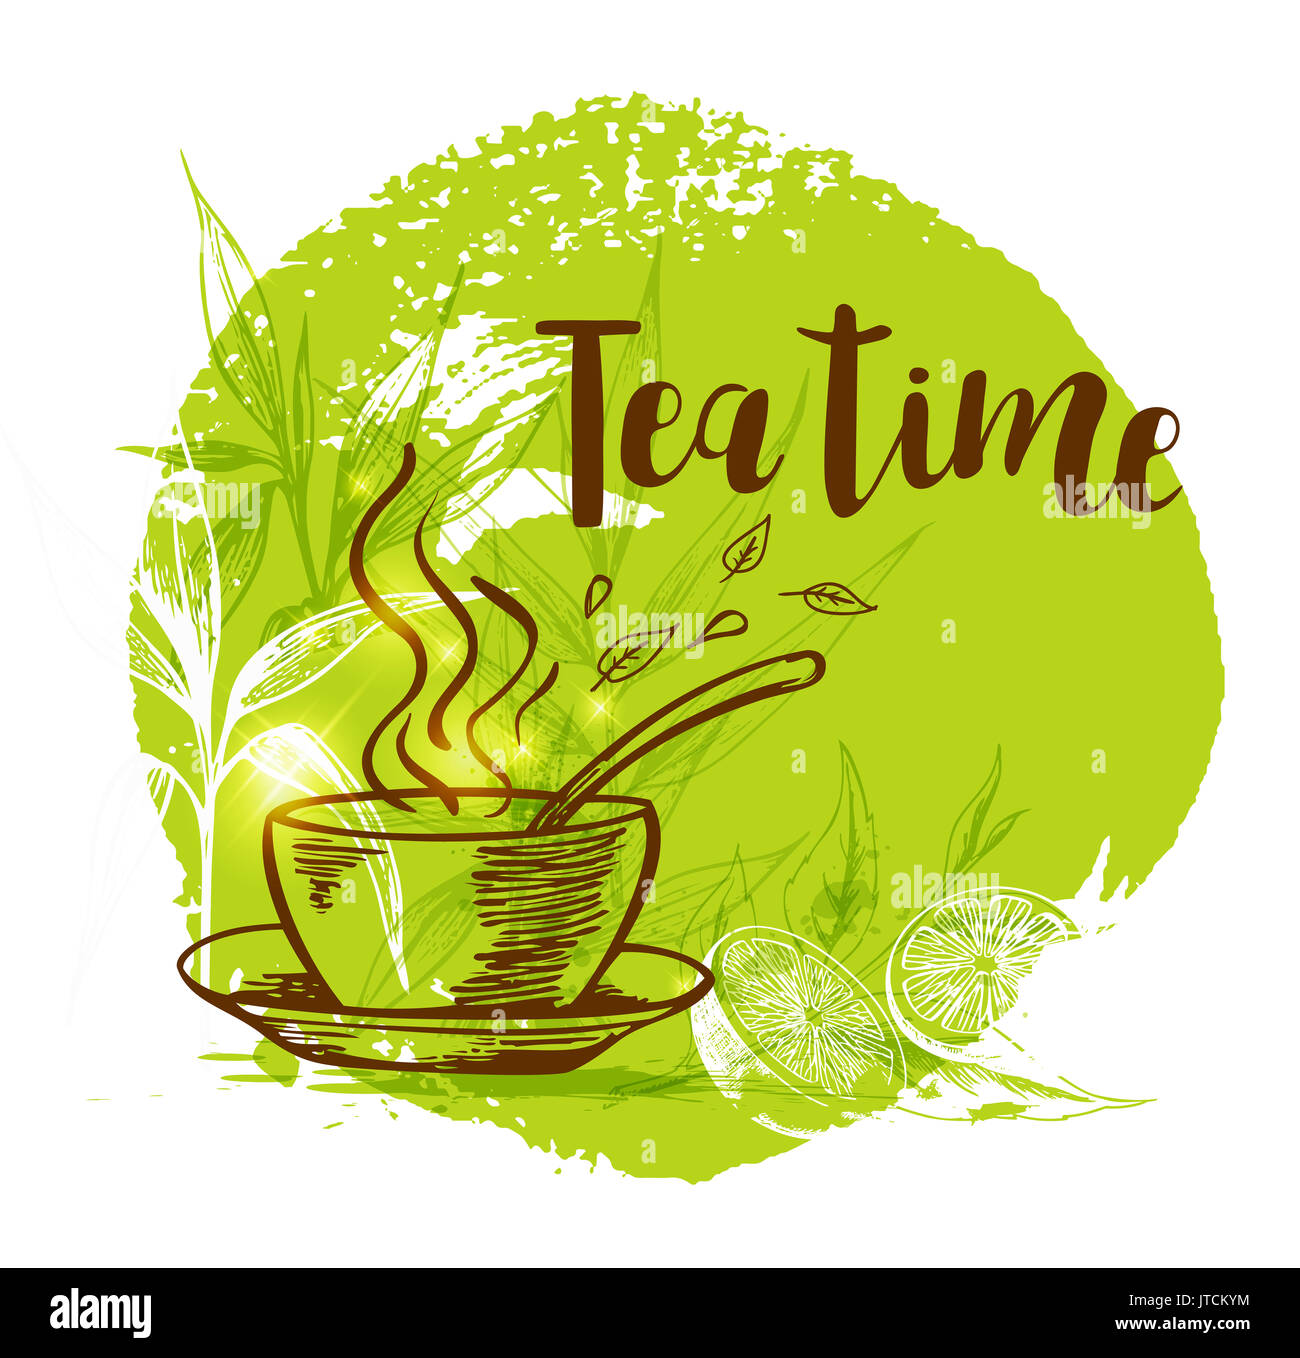 Tazza di tè e bambù ramo su uno sfondo verde in stile vintage. Lettering "Tea time' Foto Stock